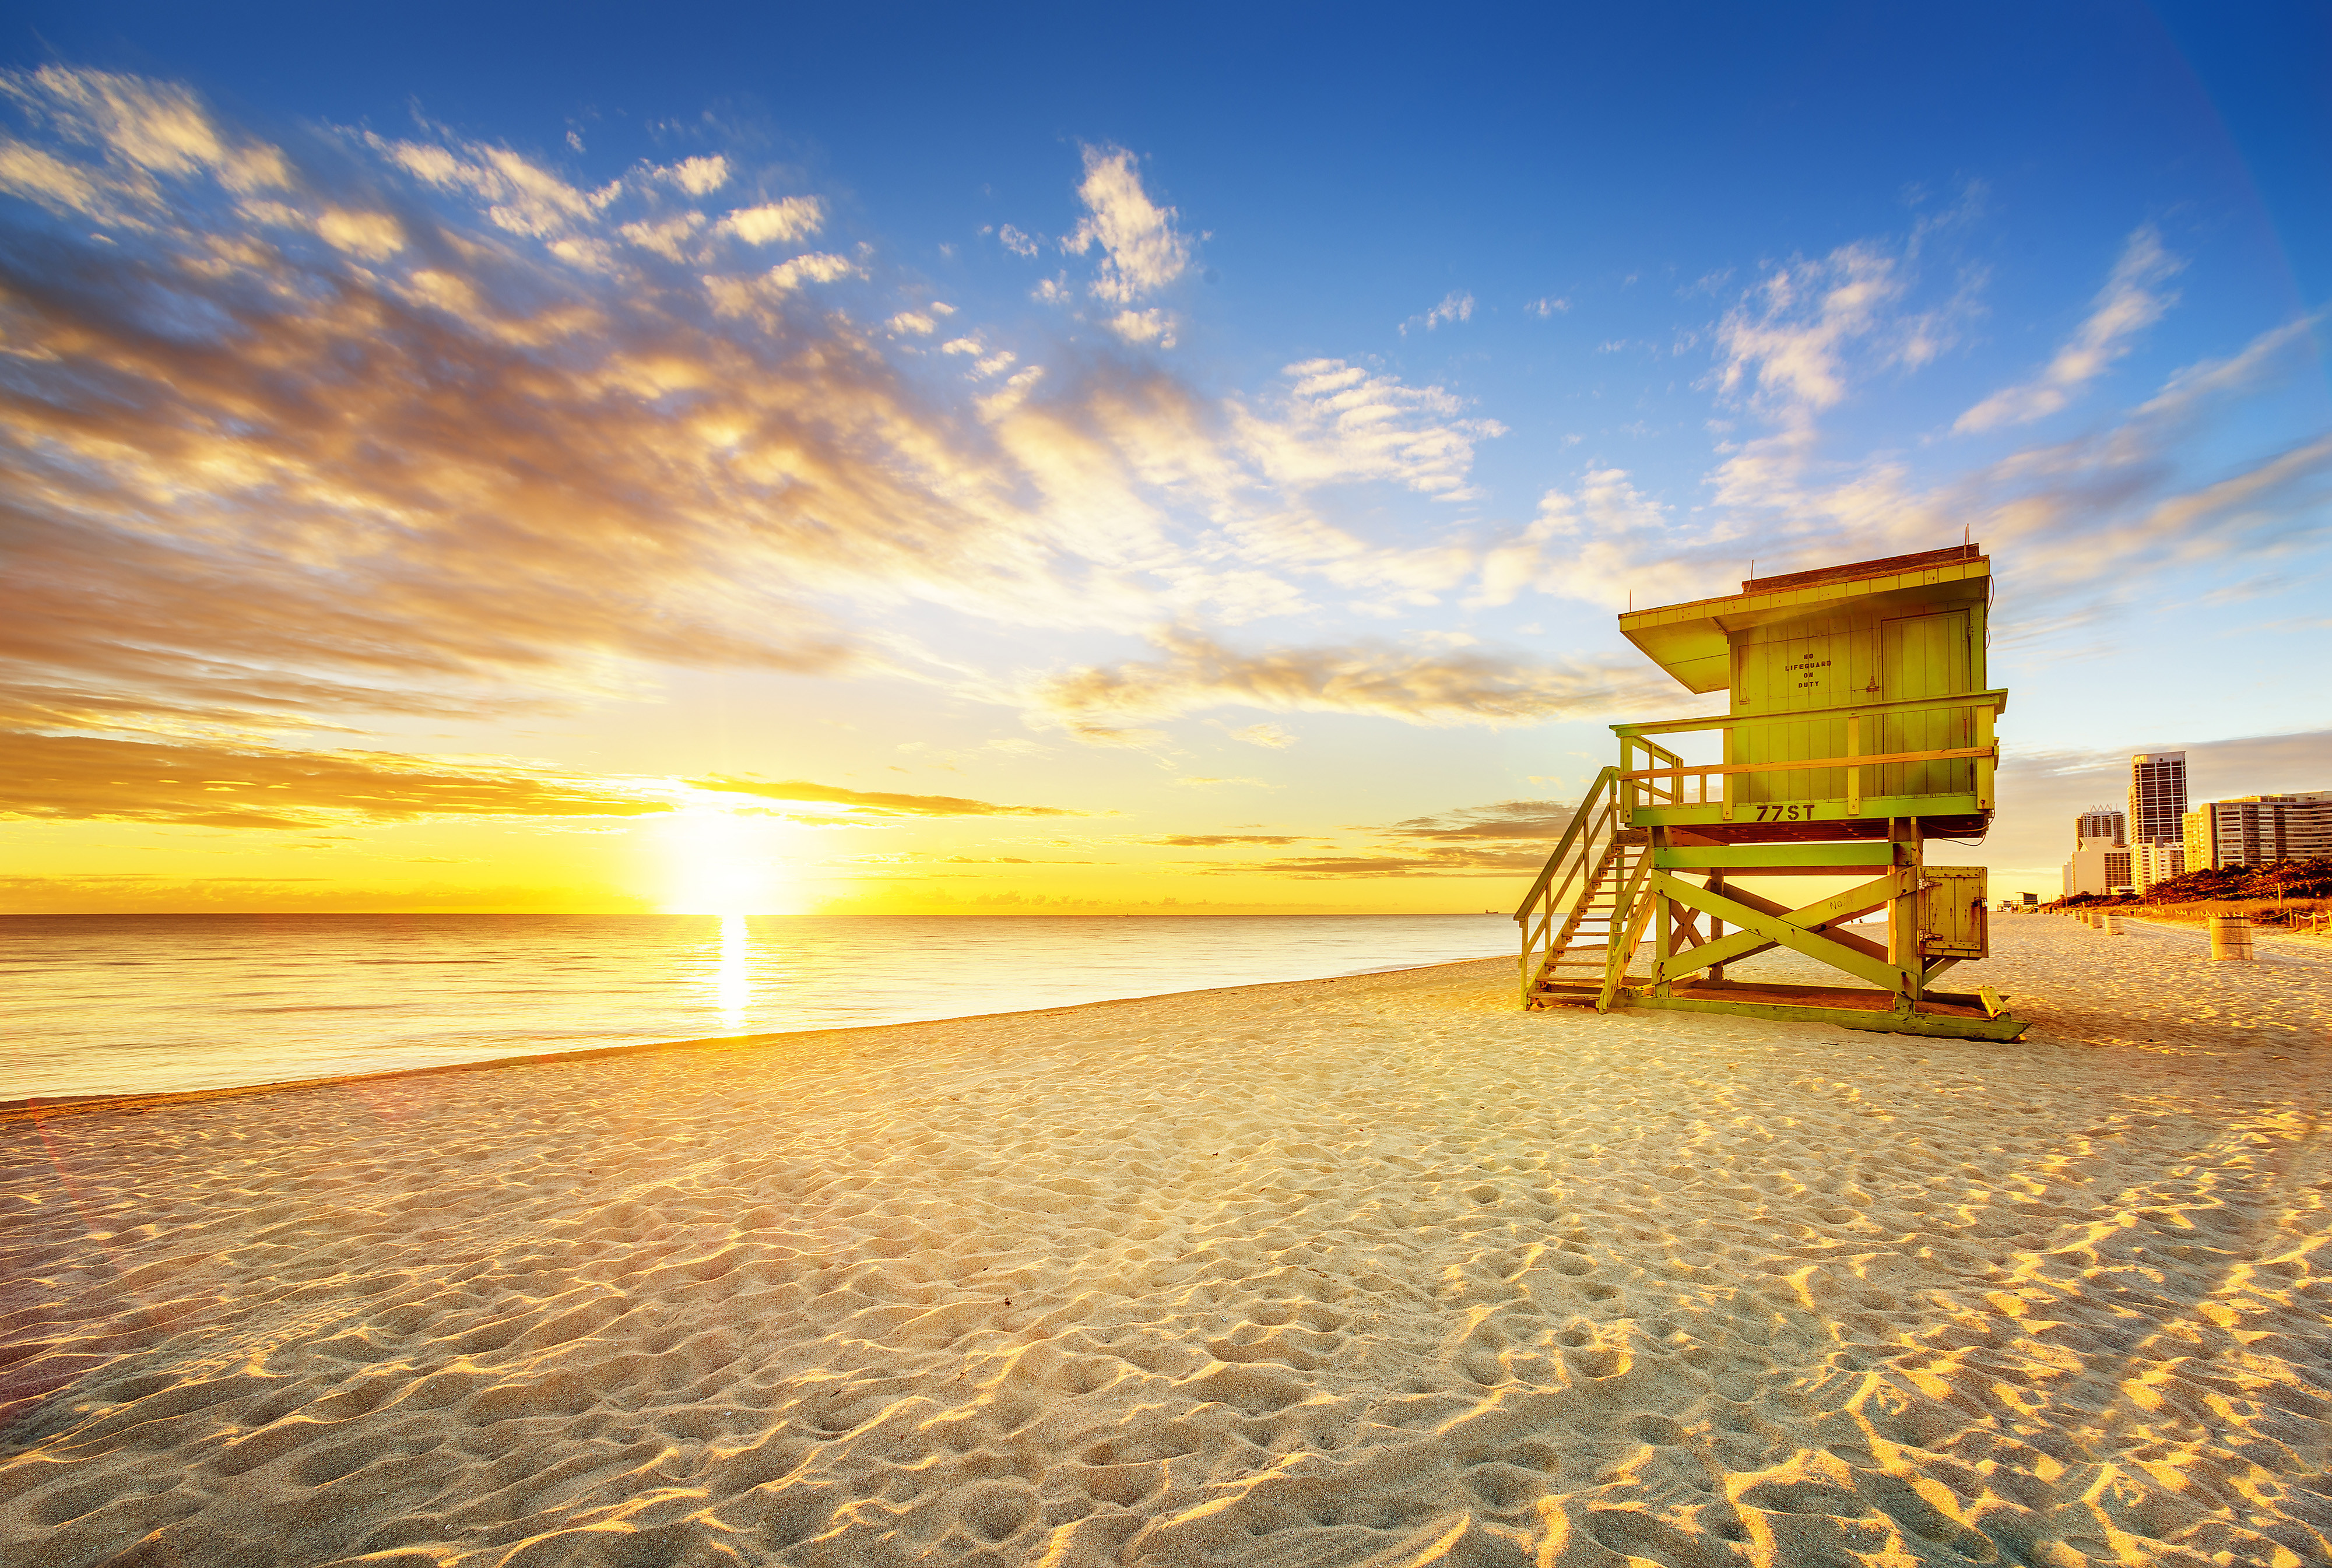 Summer Beach Vacation Deals & Summer Beach Vacation Destinations